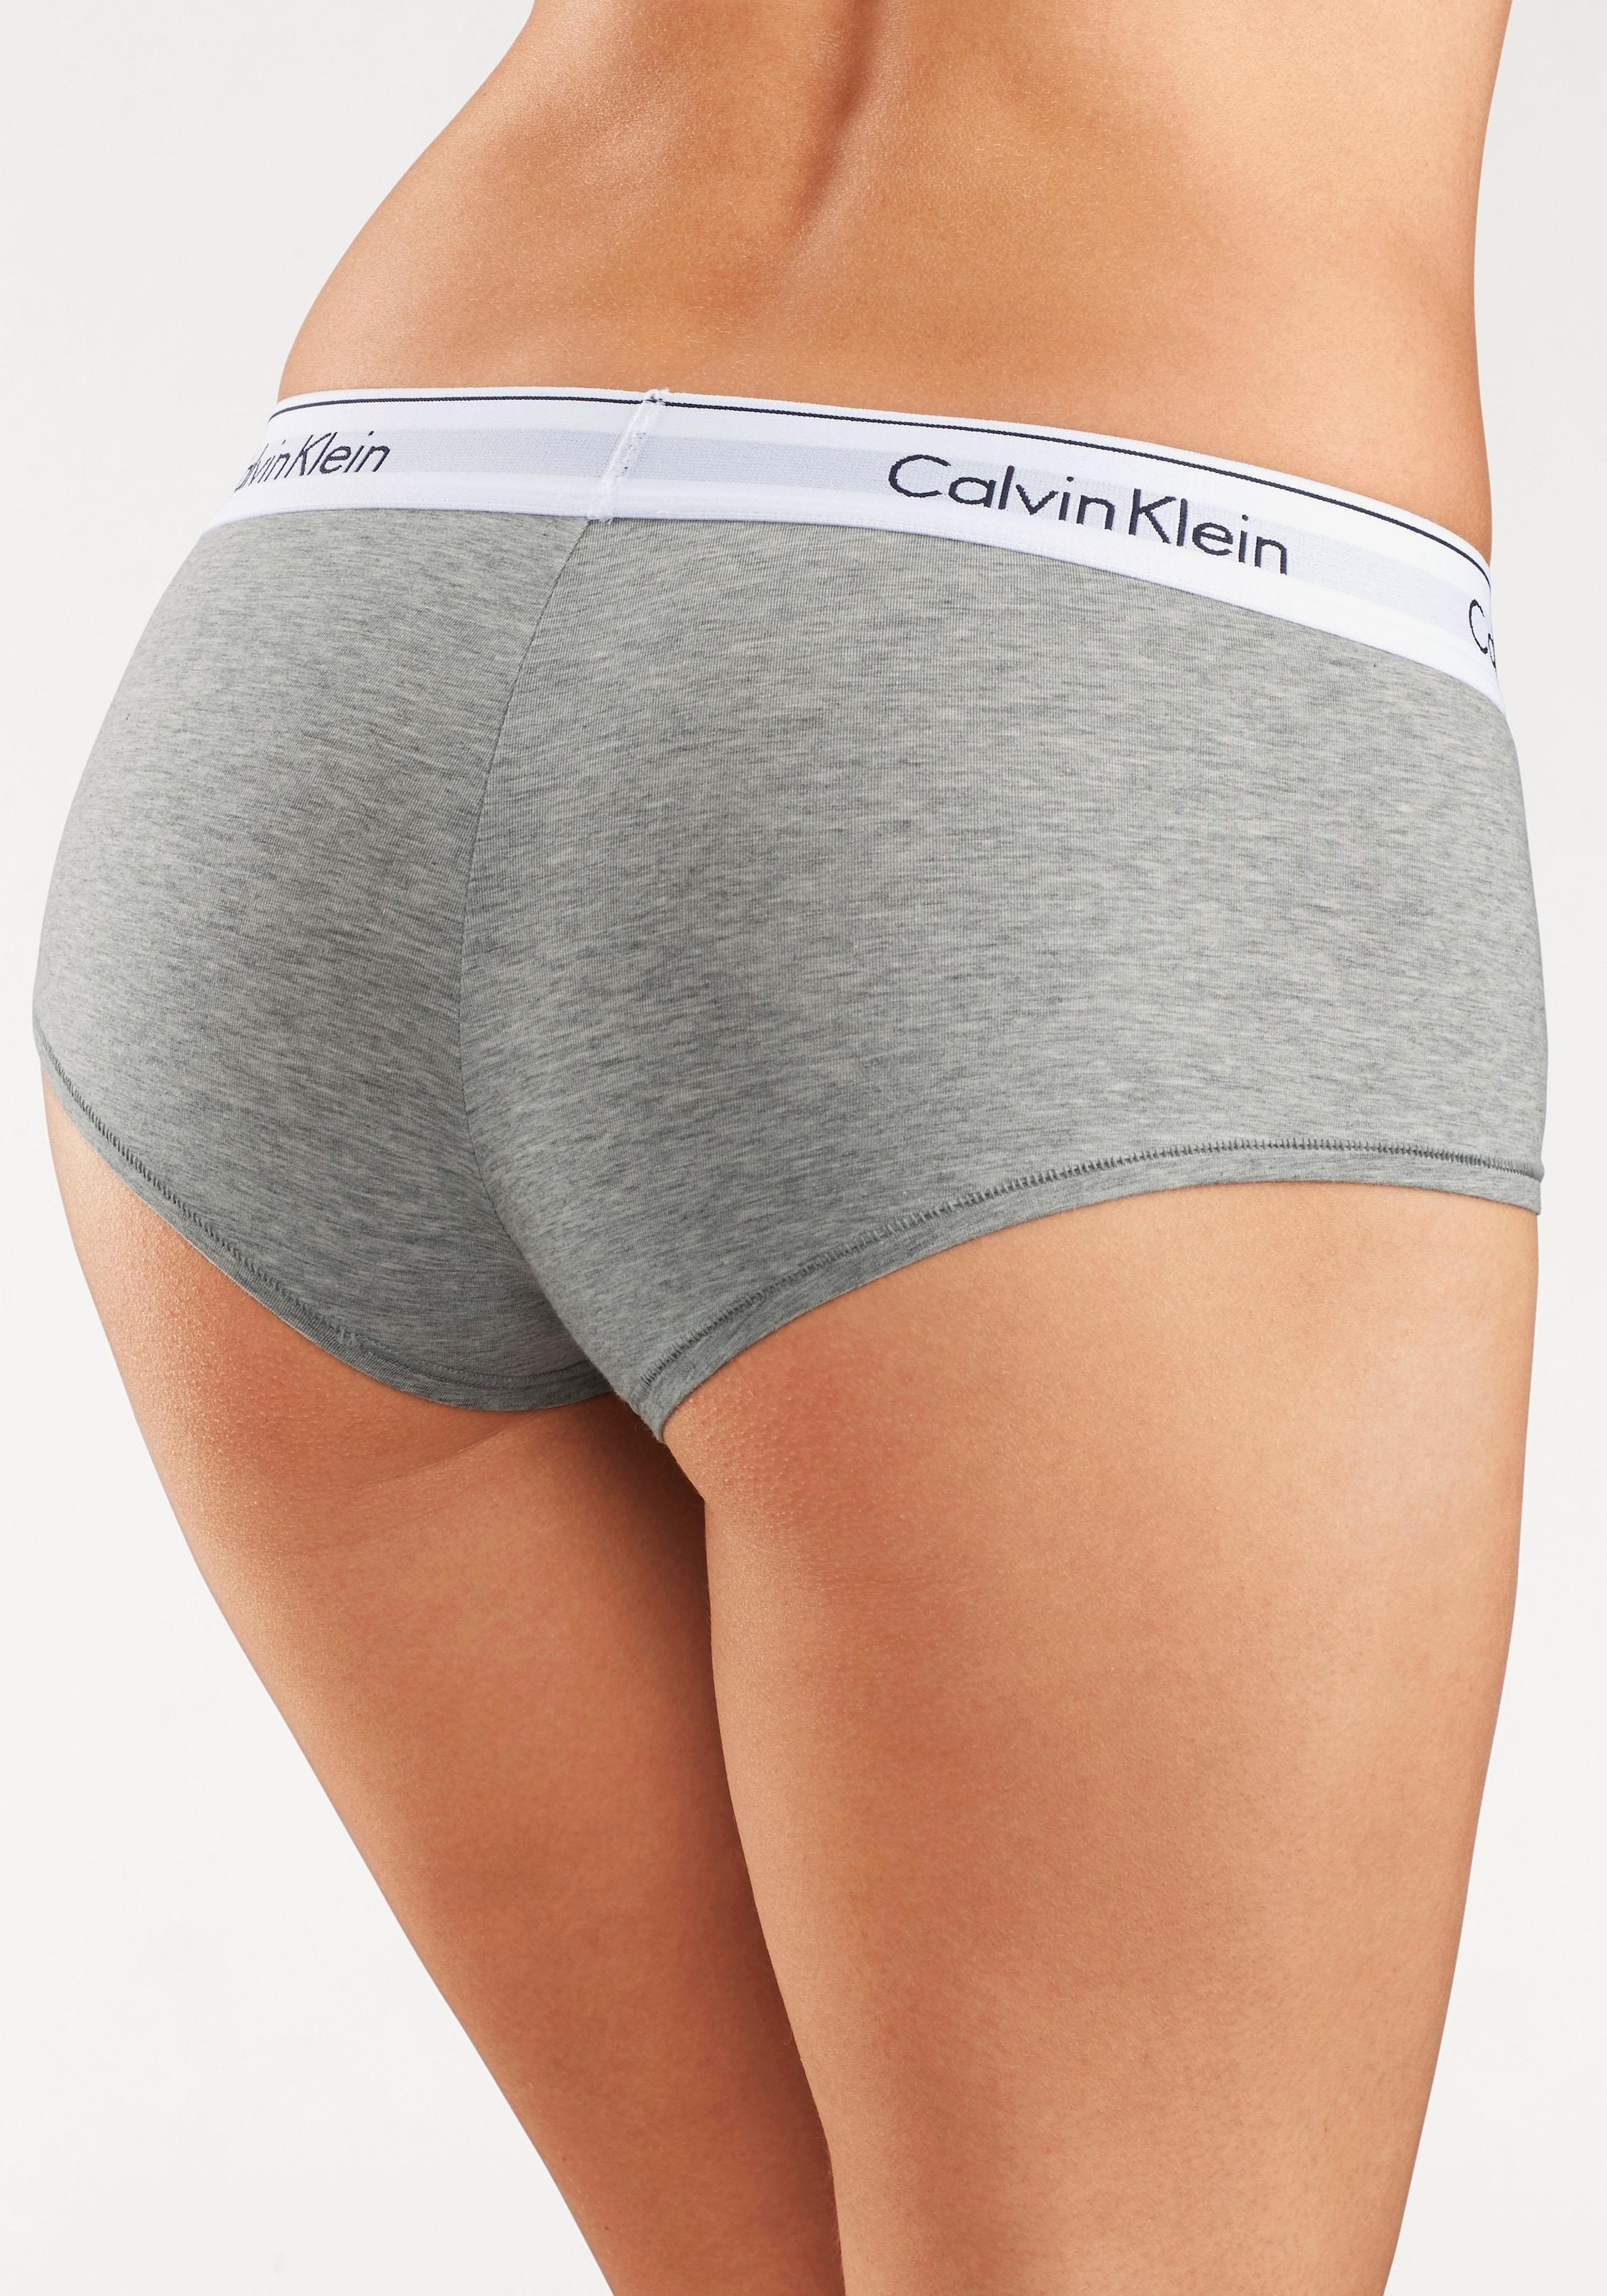 & Bündchen Klein mit Panty breitem auf Calvin Wäsche bestellen COTTON«, Rechnung »MODERN